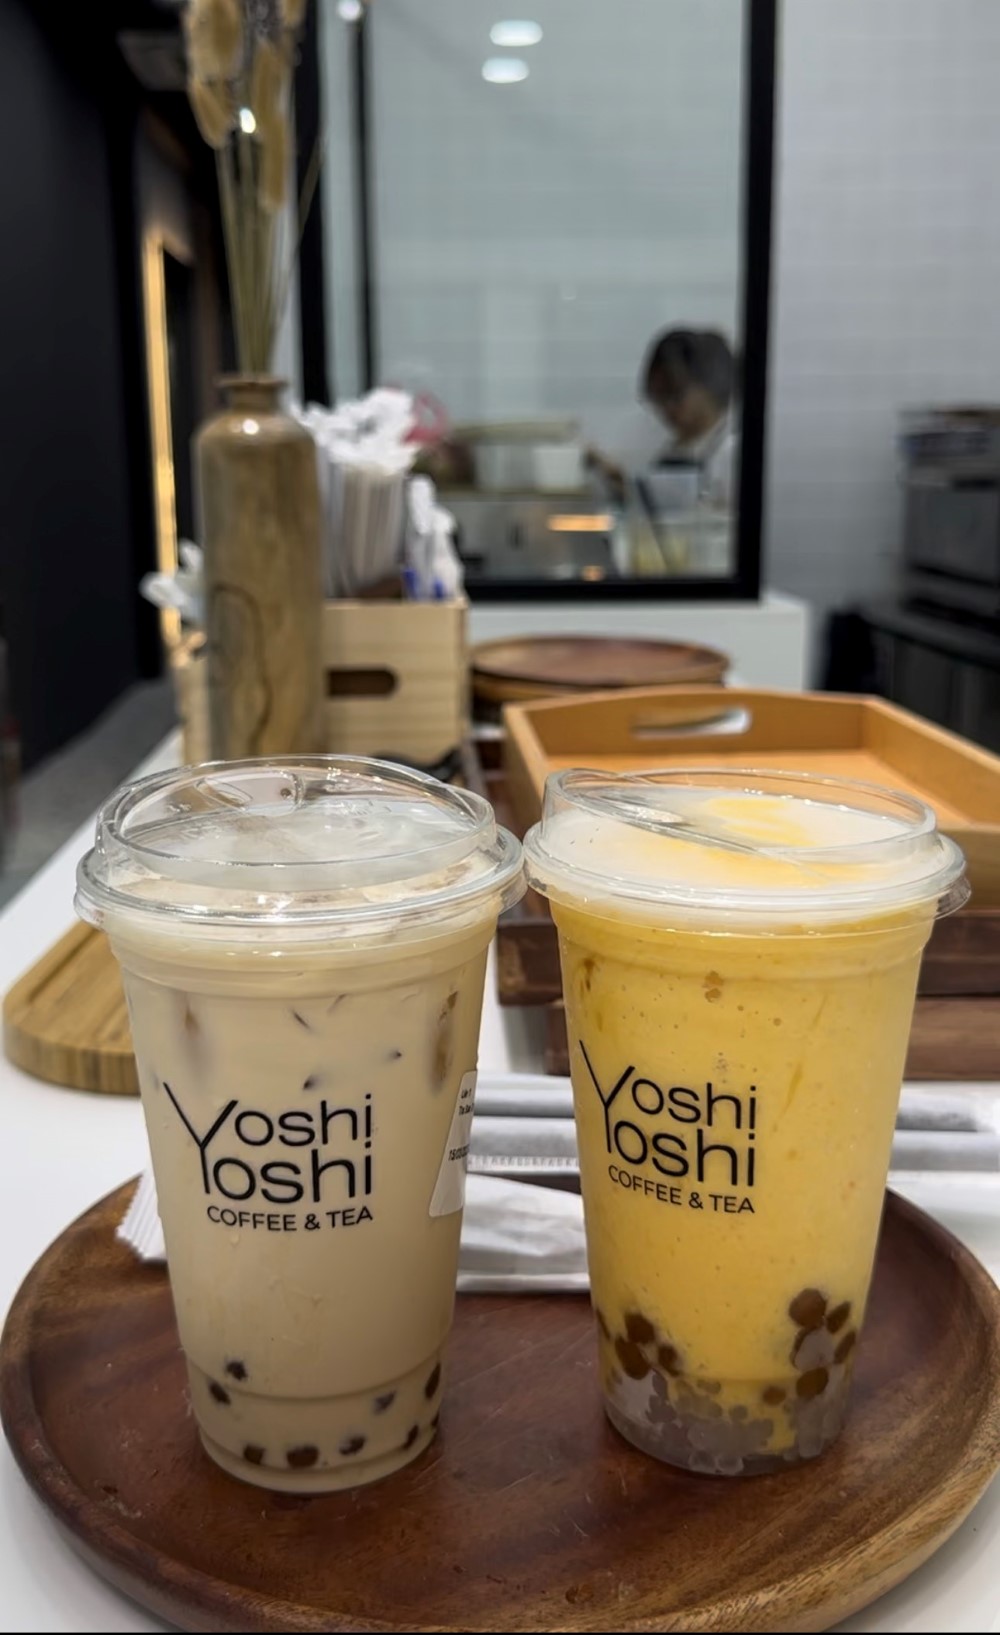 yoshiyoshi-coffee-tea-644b451cac1e9.jpg